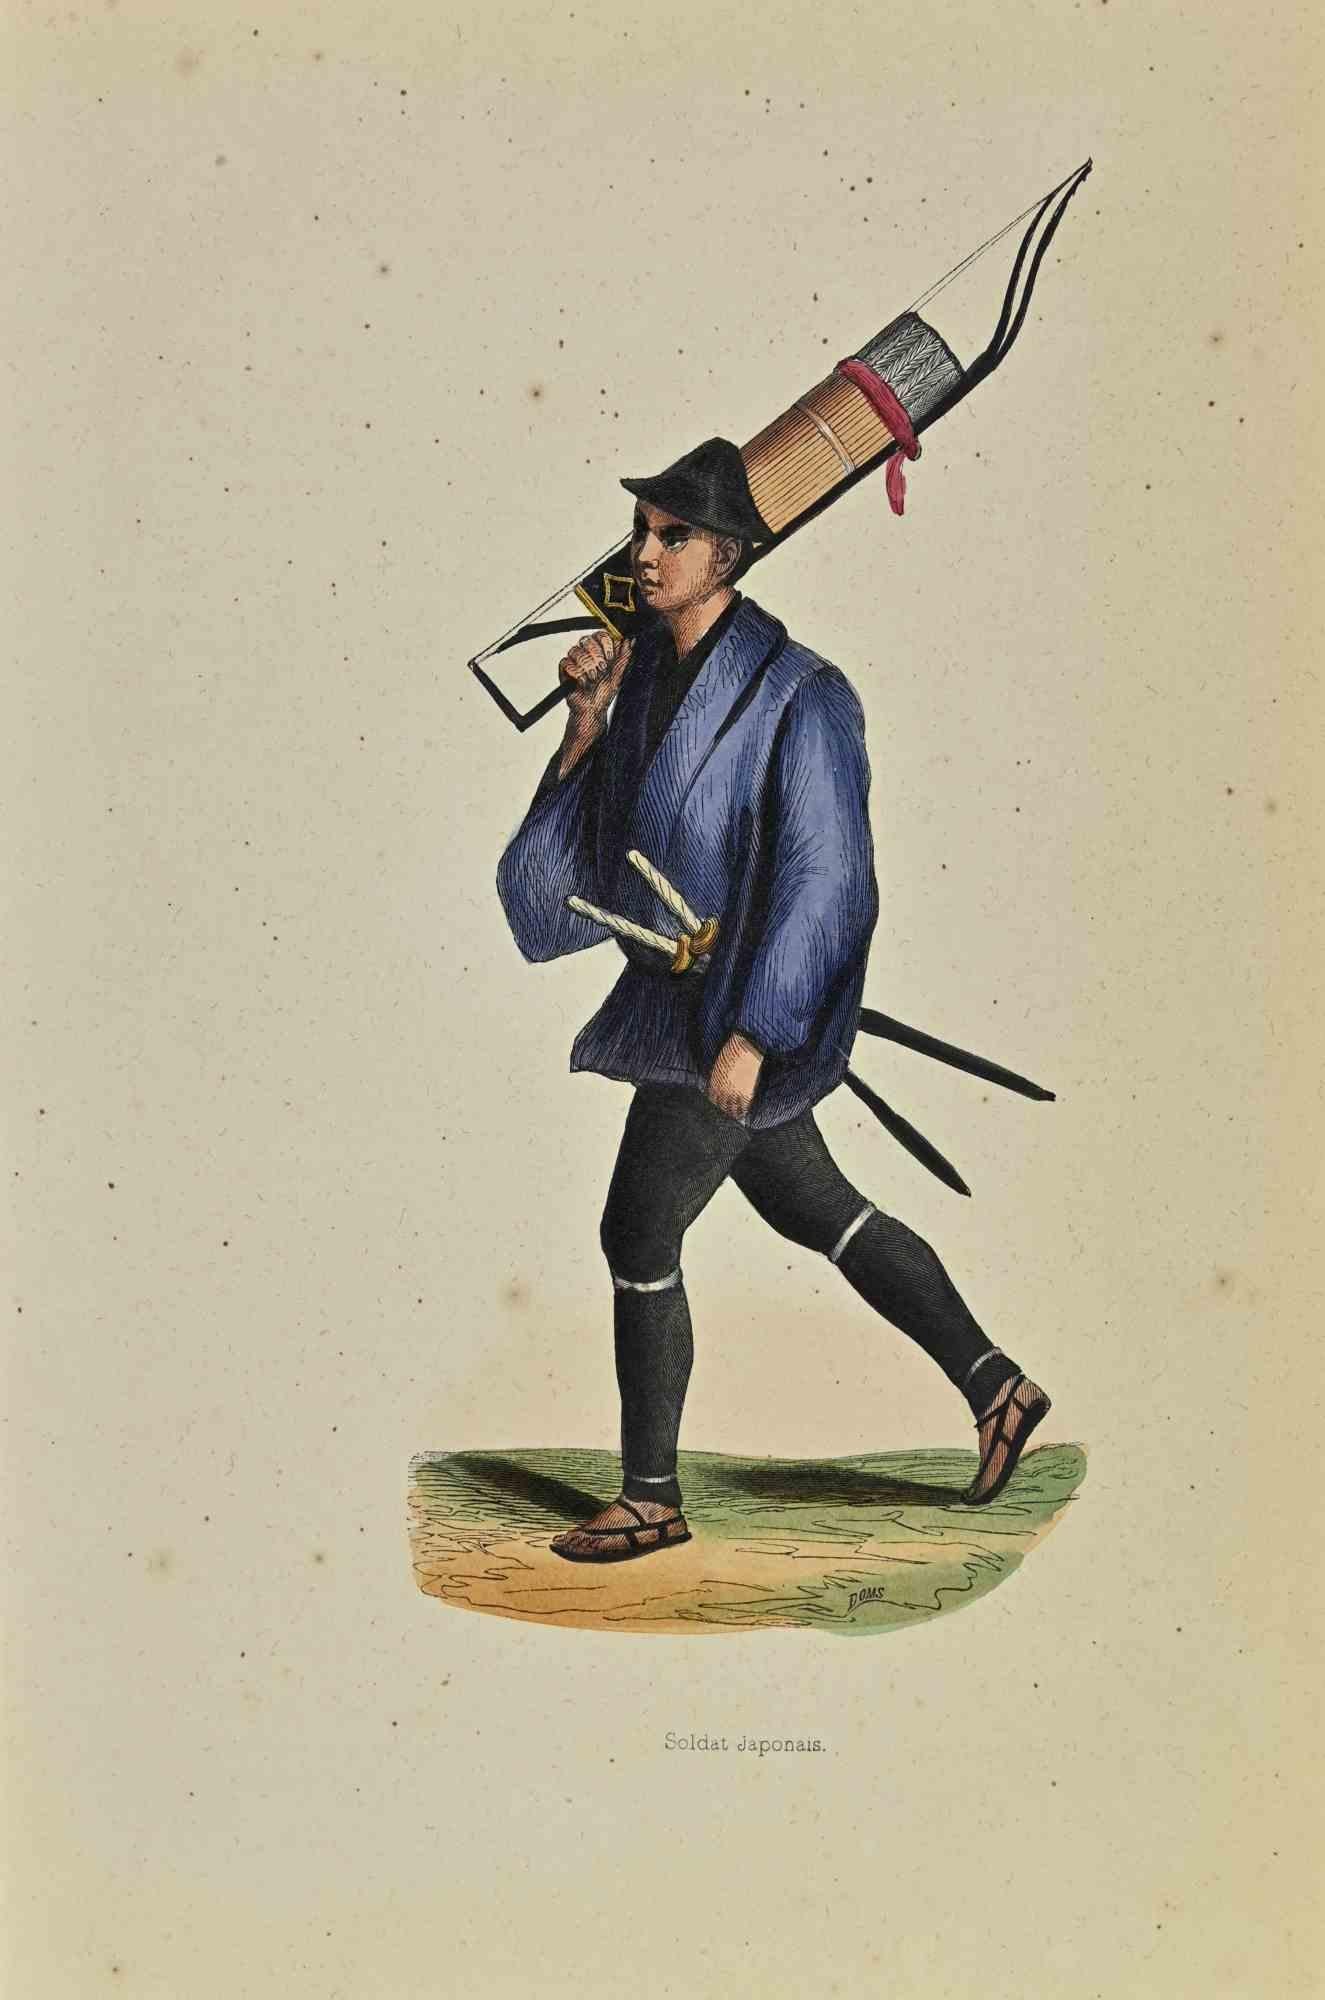 Japanischer Soldat ist eine Lithografie von Auguste Wahlen aus dem Jahr 1844.

Handgefärbt.

Guter Zustand.

In der Mitte des Kunstwerks steht der Originaltitel "Soldat Japonais".

Das Werk ist Teil der Suite Moeurs, usages et costumes de tous les